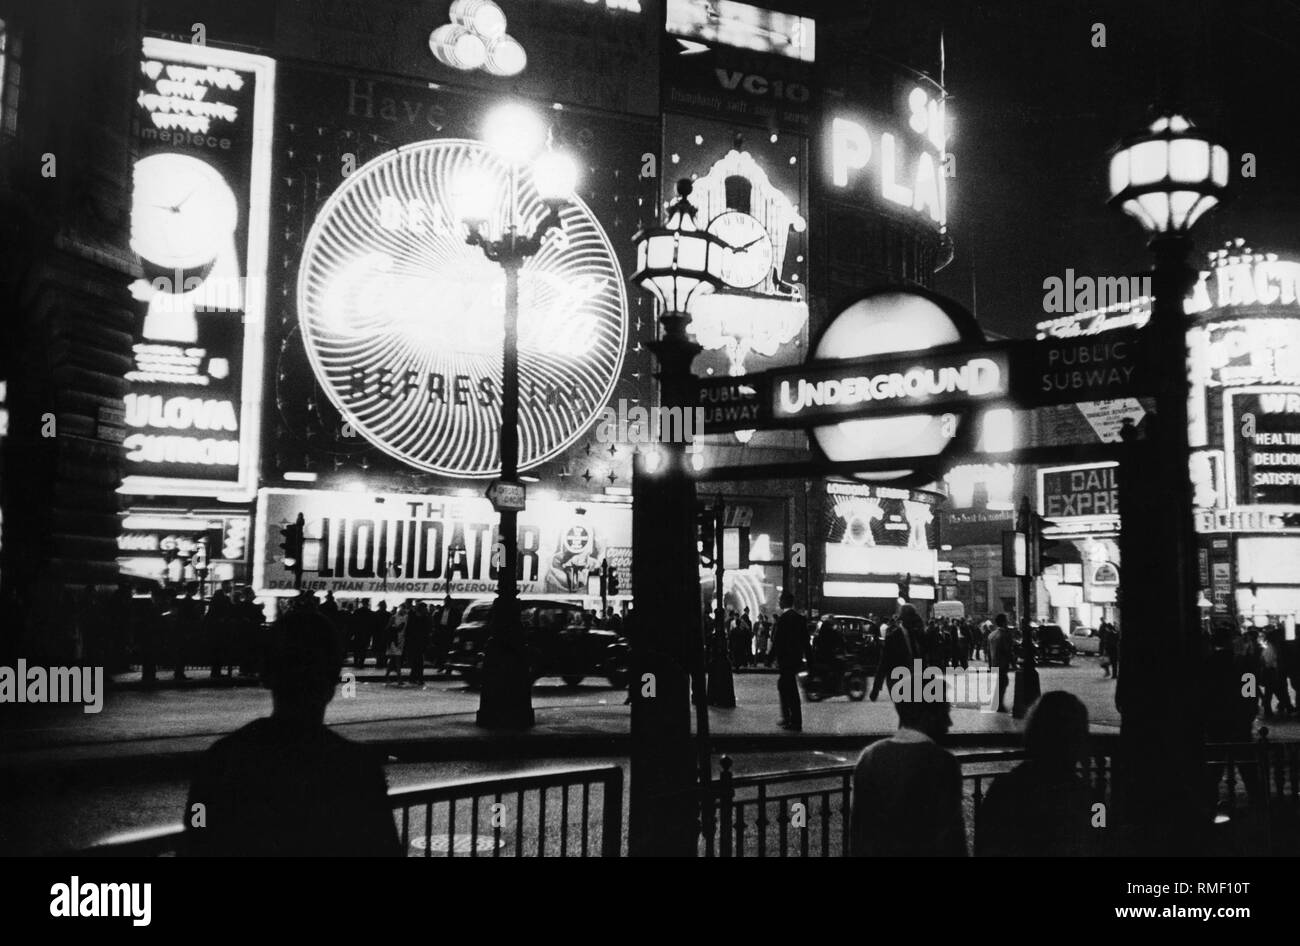 Piccadilly Circus à Londres : Photos affiche publicité lumineuse Daiquiri (rhum, Underground, le liquidateur) et les personnes (photo non datée). Banque D'Images